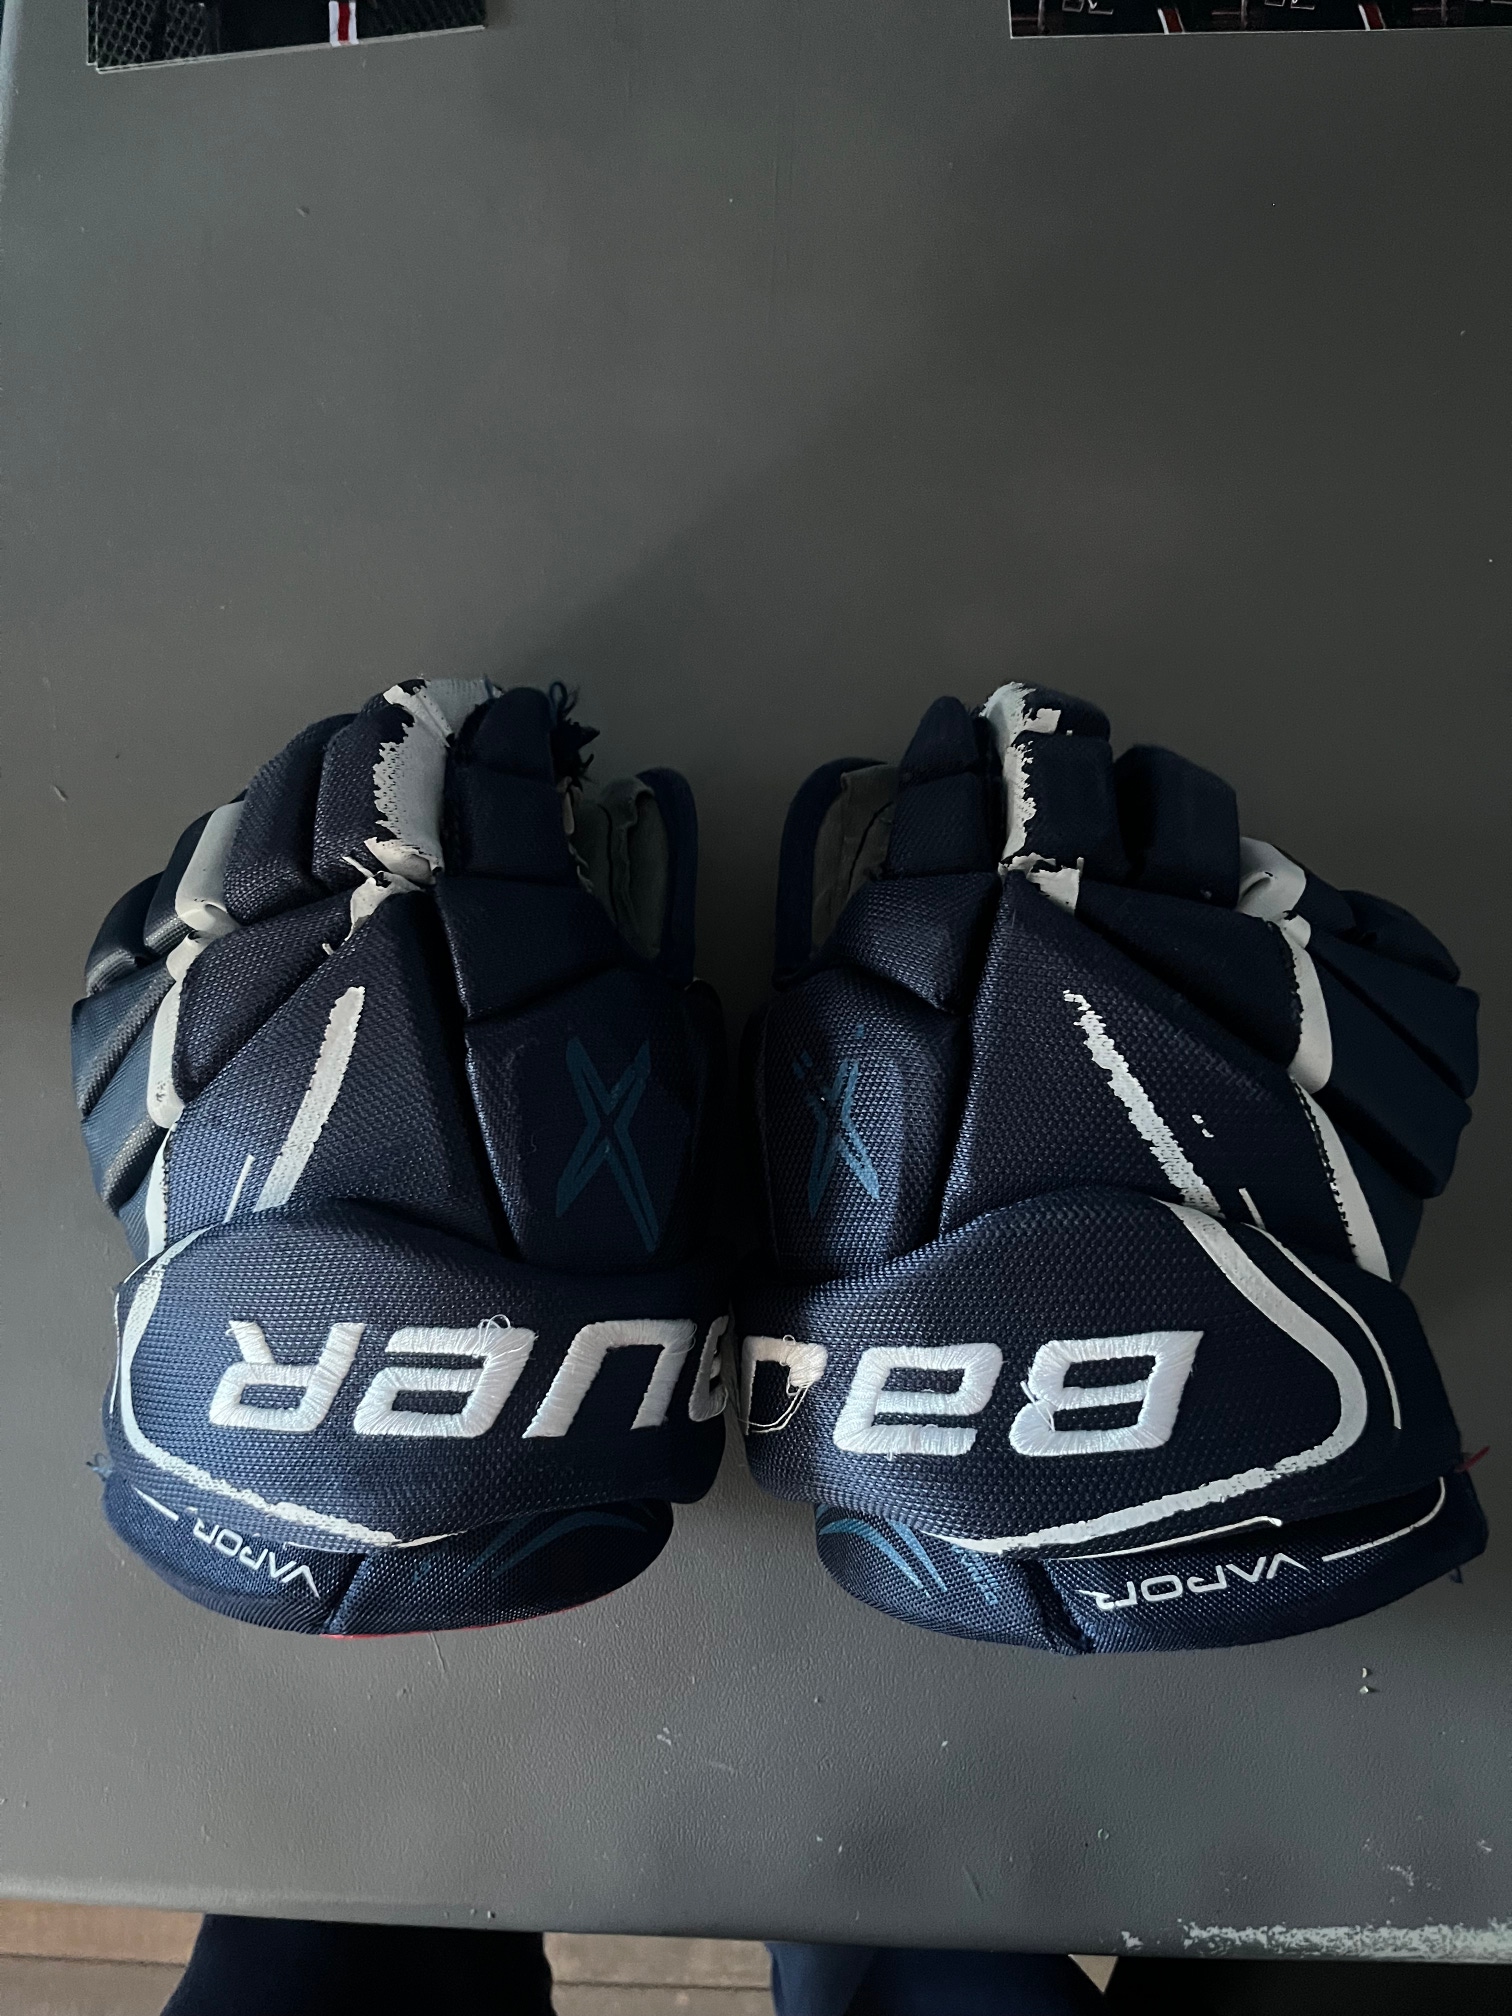 Used Bauer Vapor X800 Lite Gloves 13"